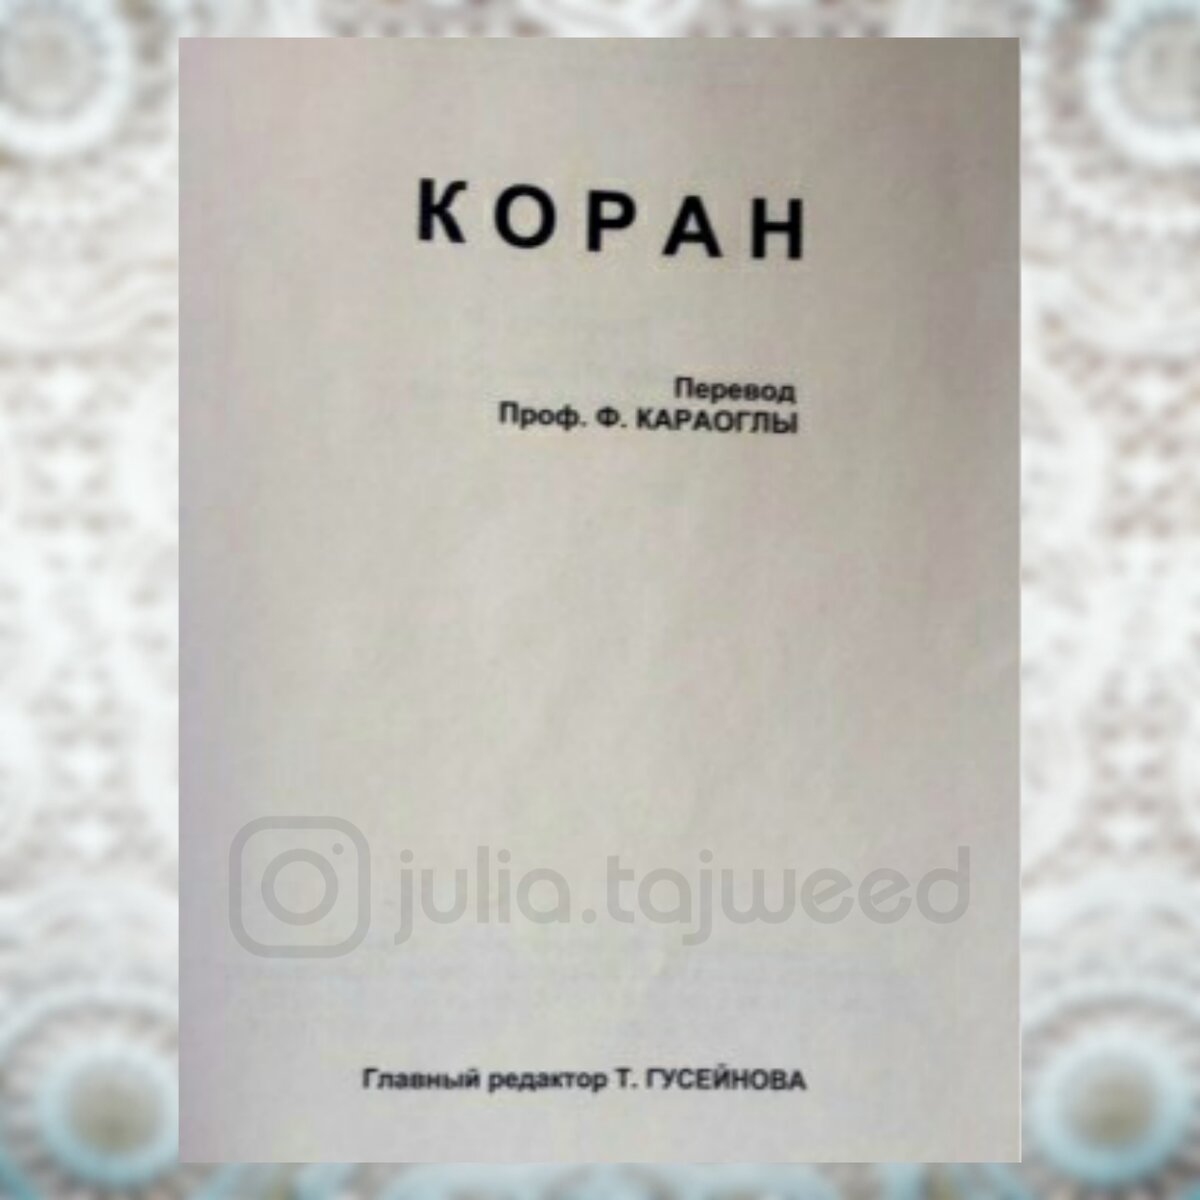 В 1994 году в г. Баку 🇦🇿 был издан русский перевод азербайджанского учёного Фазила Караоглы. Его работа неоднократно публиковалась в Турции 🇹🇷 (как минимум 2 раза издавался в г.-3